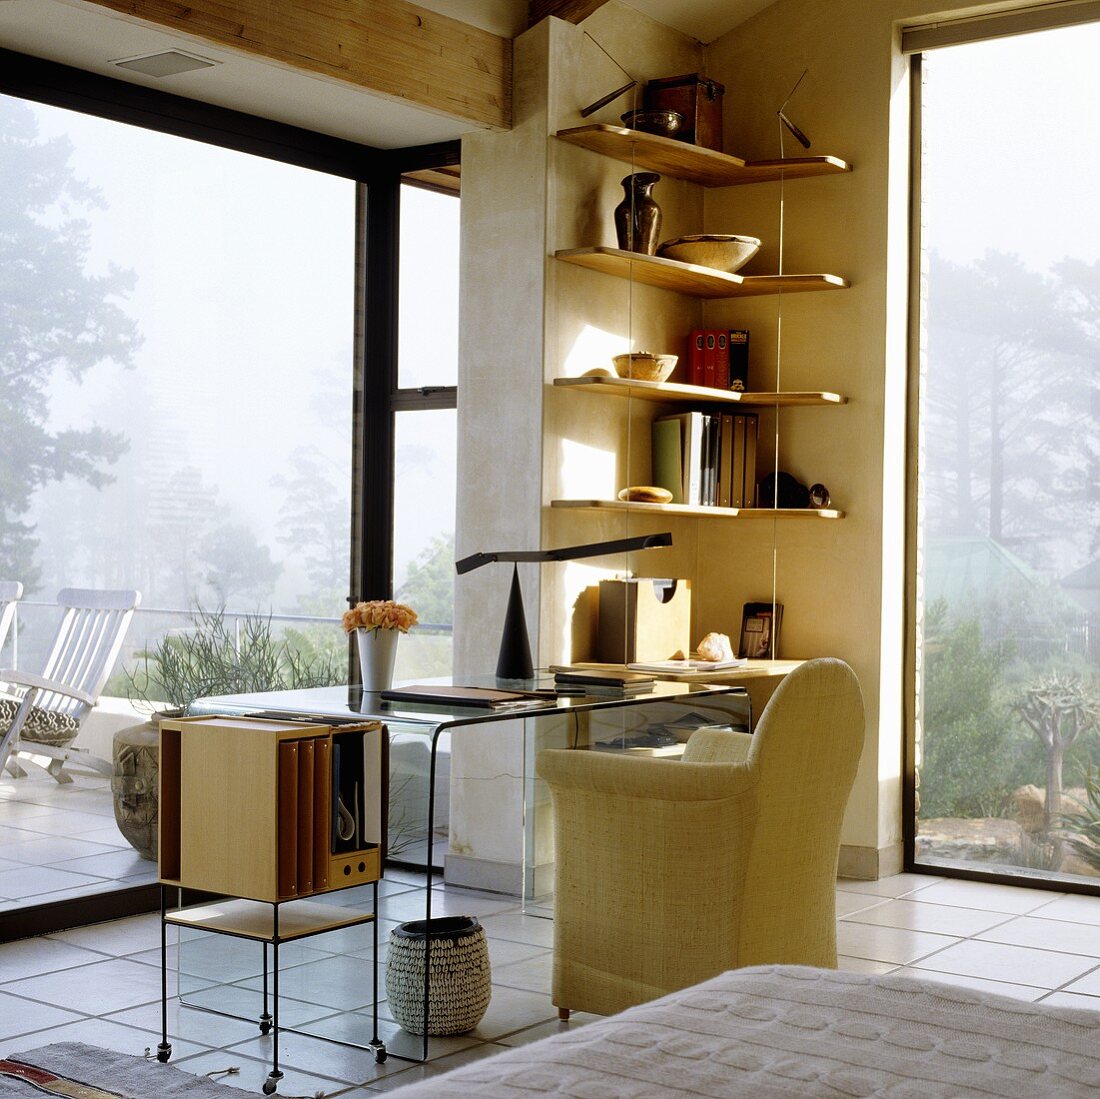 Arbeiten mit Panoramablick - Sessel und Glastisch mit Regal in der Ecke vor raumhohen Fenstern